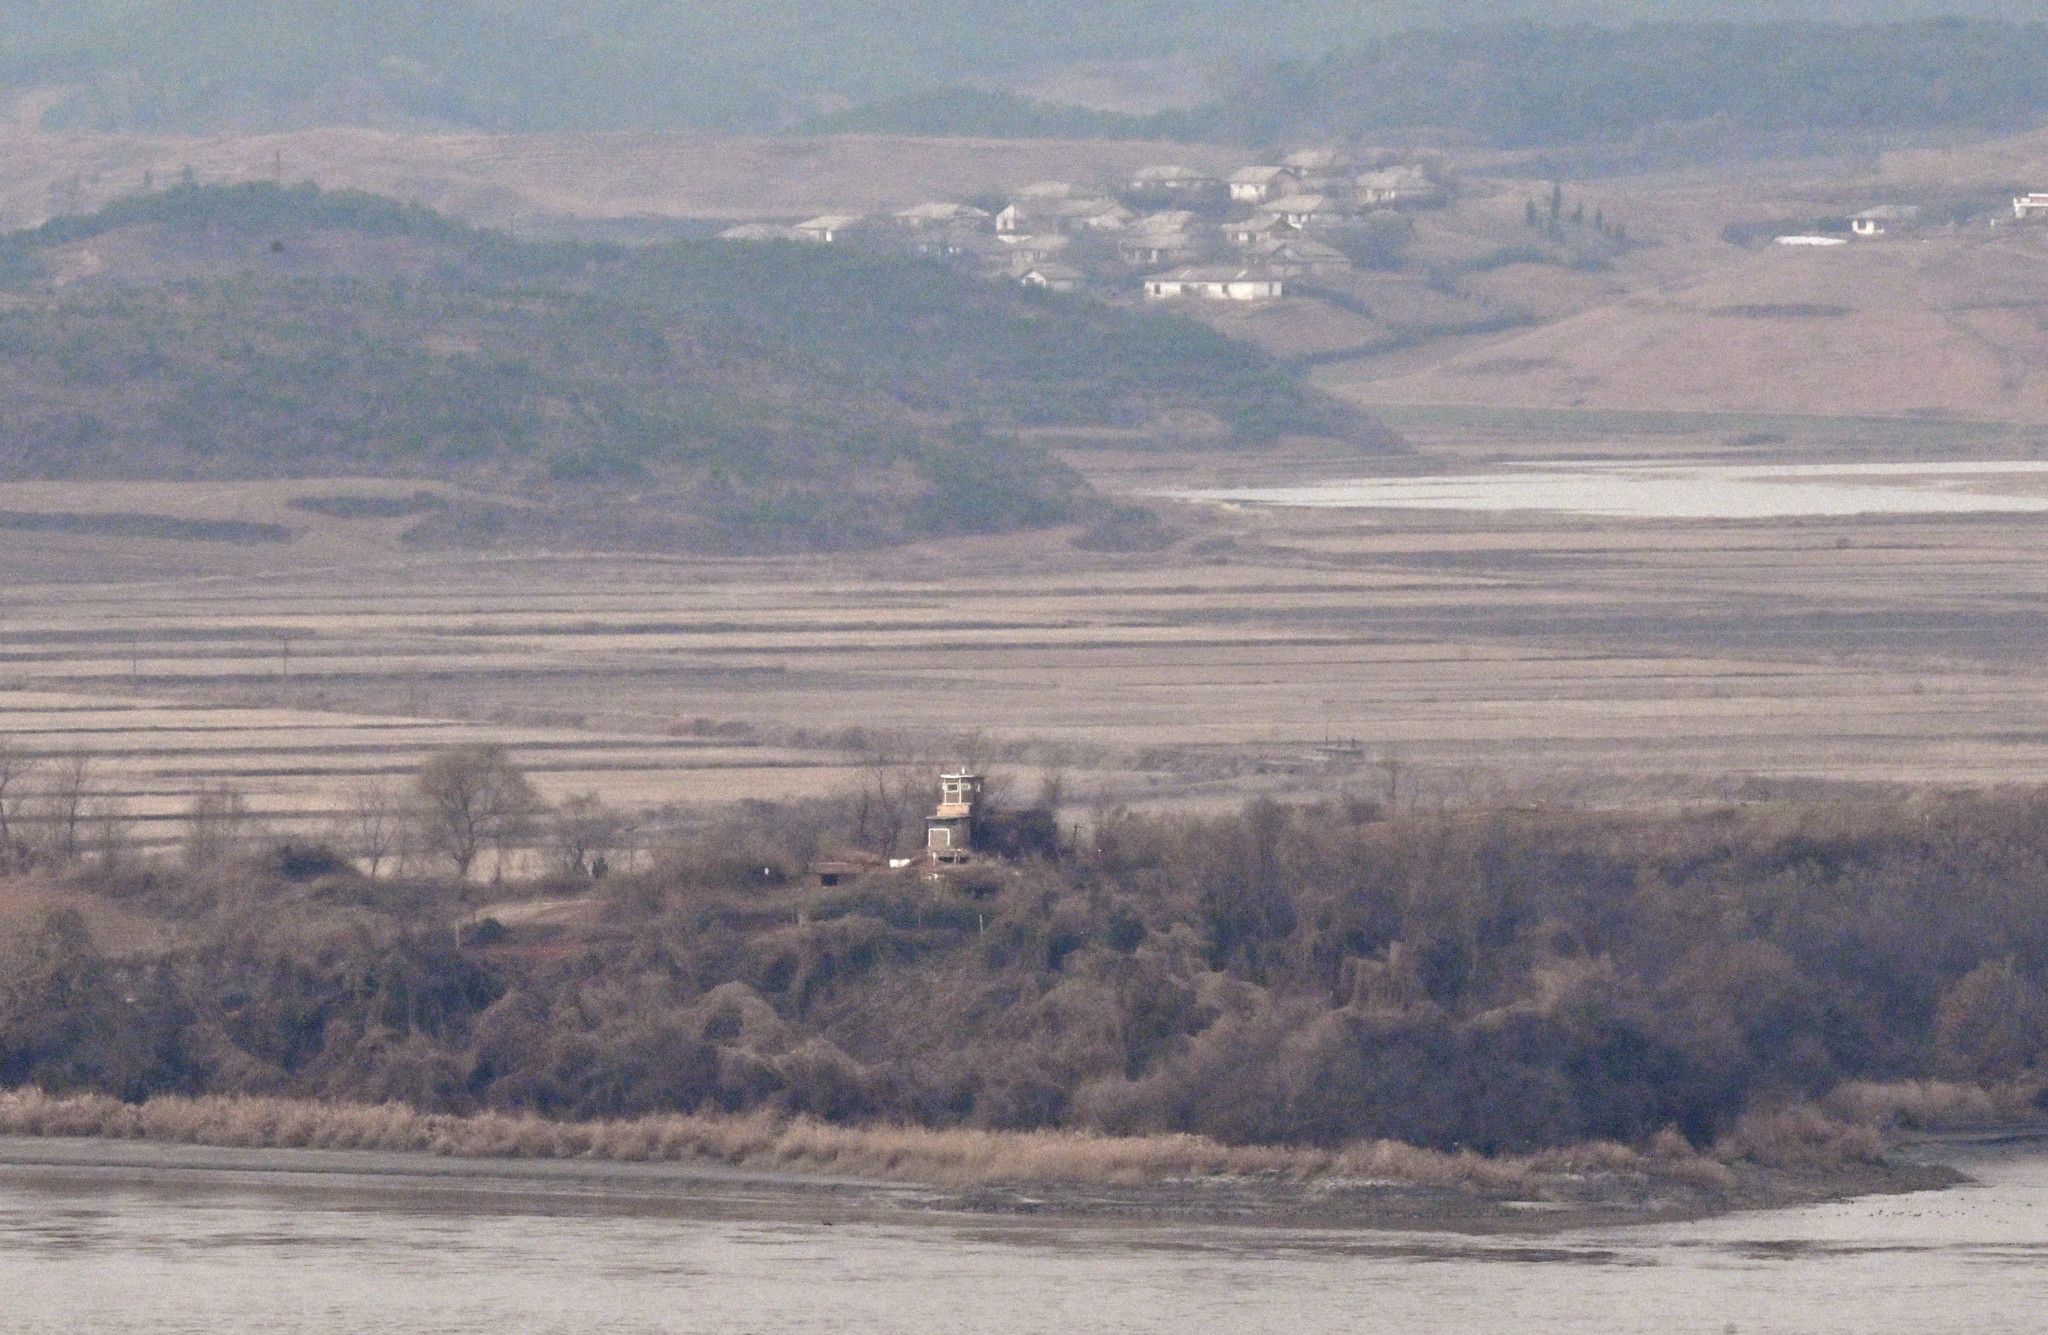 Des dizaines de soldats nord-coréens franchissent la frontière Sud